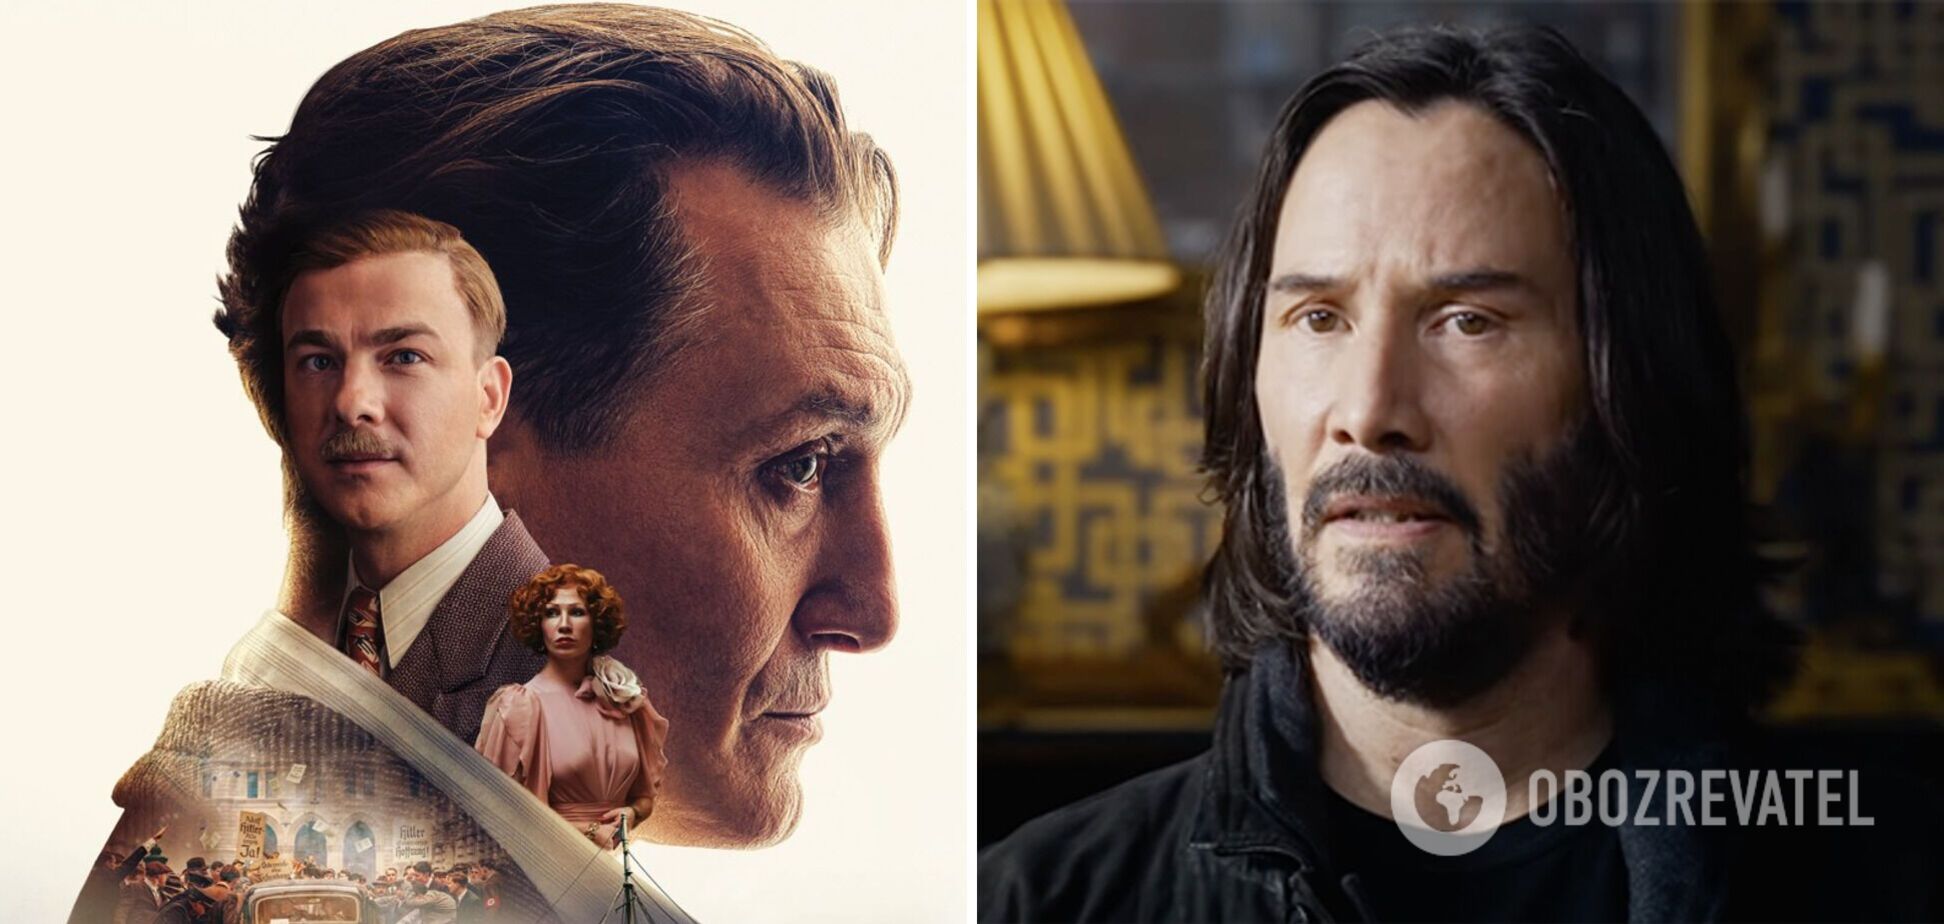 'King’s Man', 'Матрица' и другие самые ожидаемые премьеры декабря 2021 года. Трейлеры